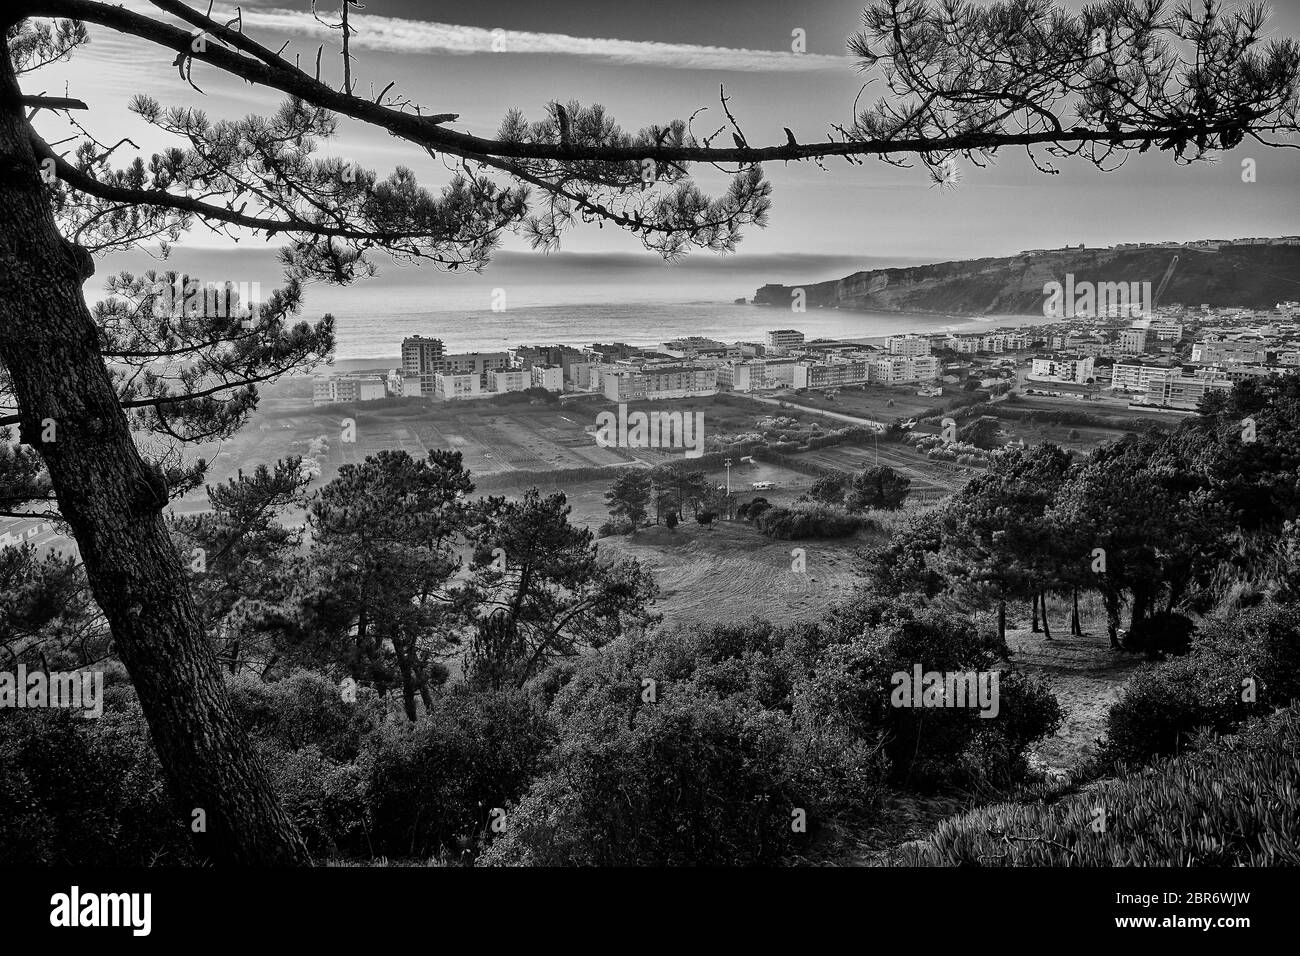 A high vantage point overlooks the Nazaré beach in Nazaré Portugal. Stock Photo